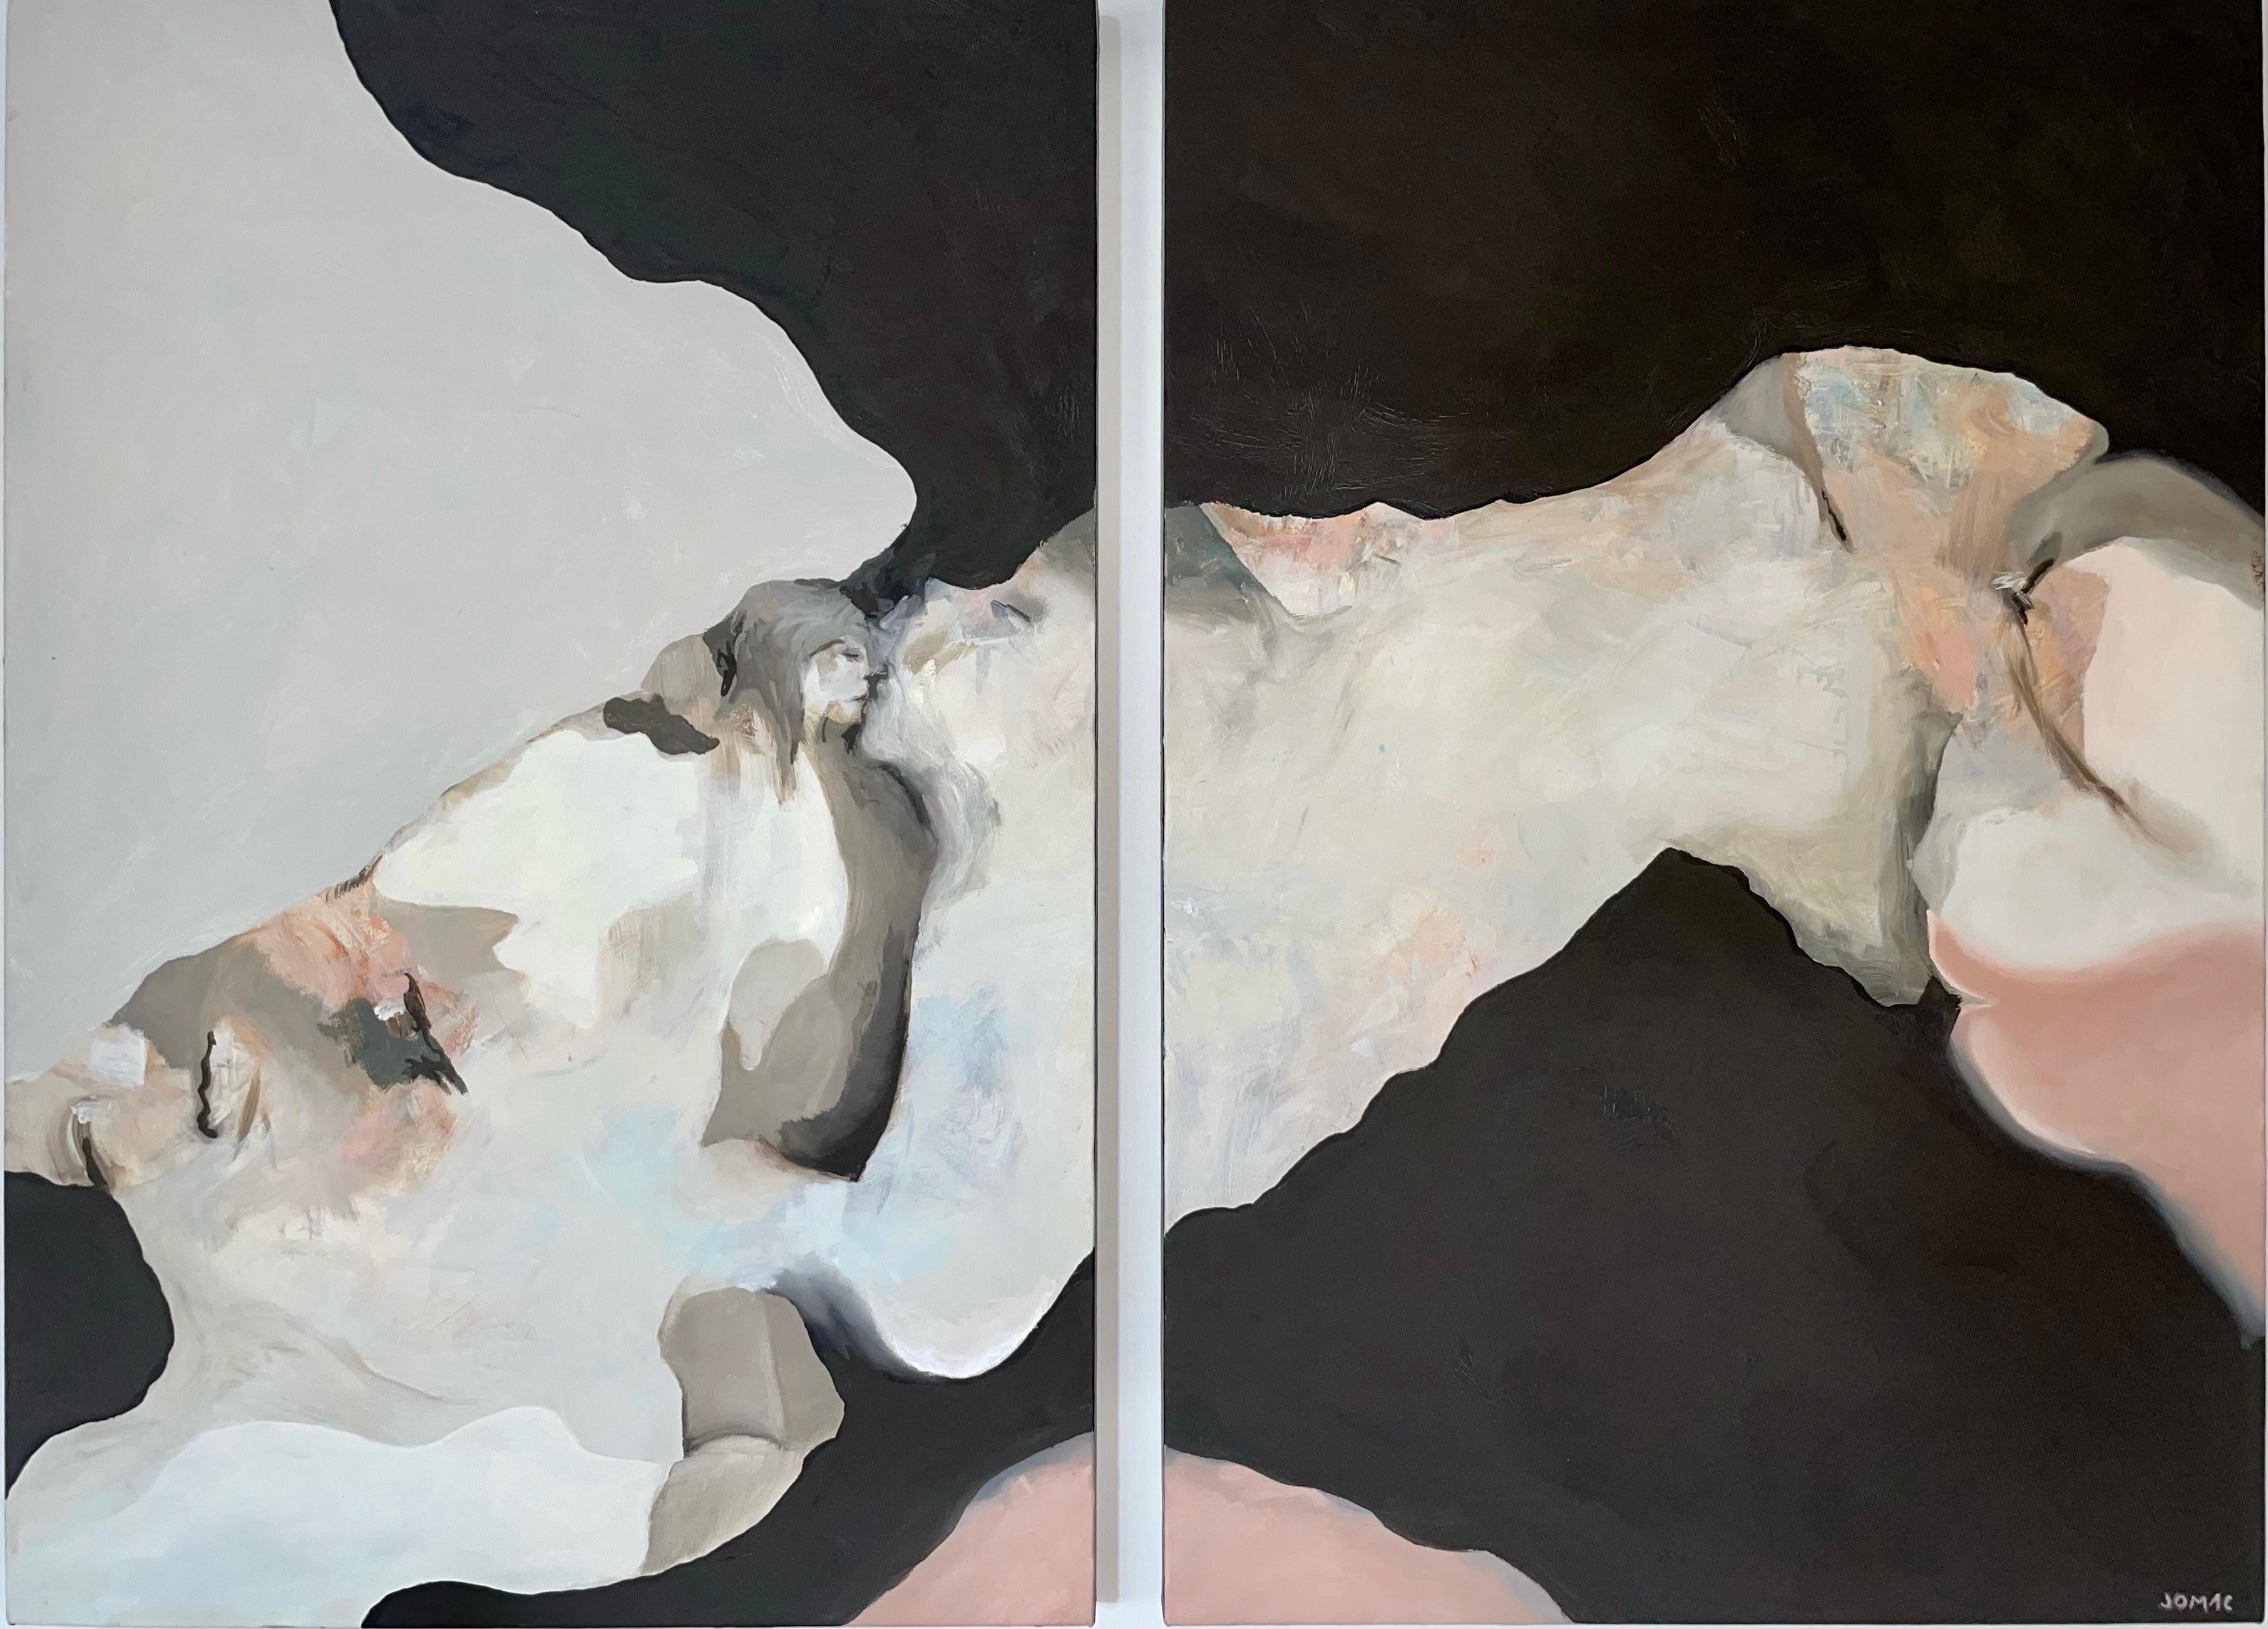 Abstract Painting Joseph McAleer - Odysseus' Muse : peinture abstraite contemporaine à l'huile sur toile avec deux personnages